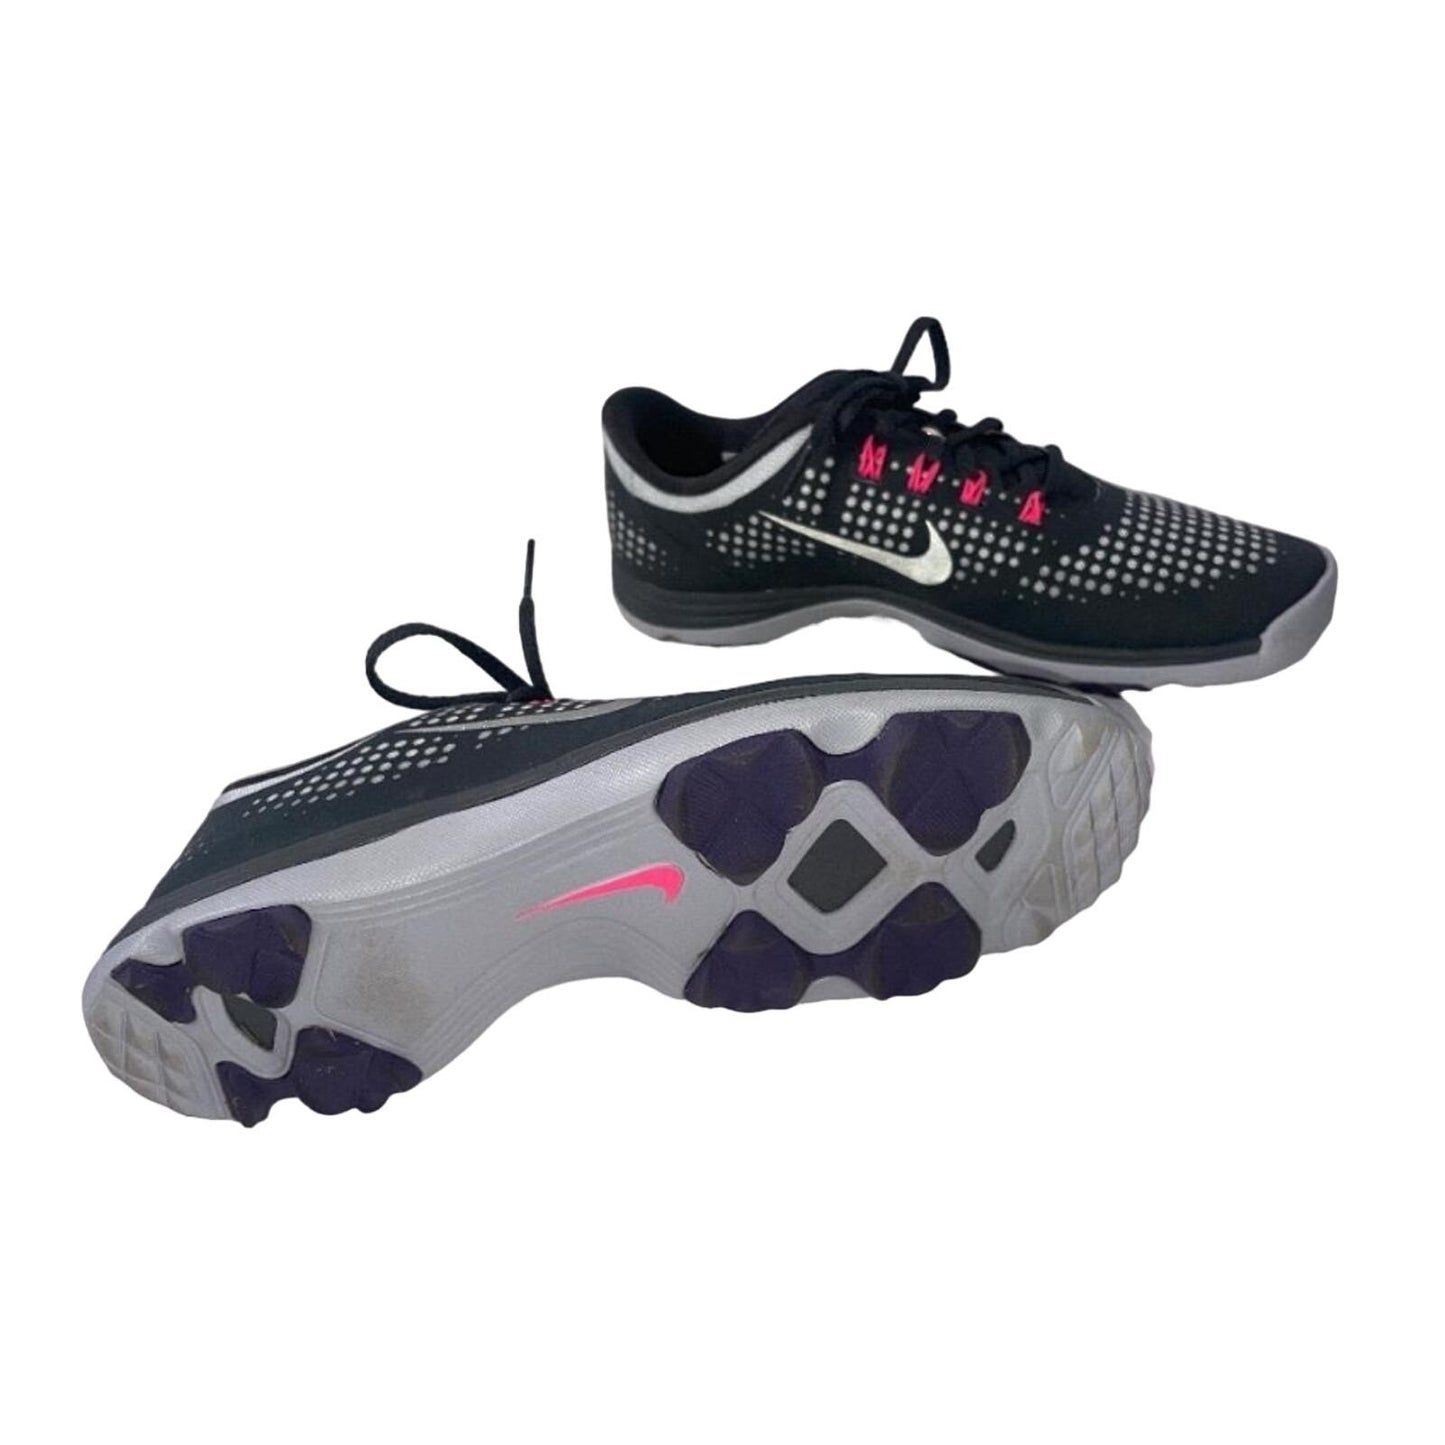 Nike Lunar Express Spikeless Golf Shoes, Womens Size 9